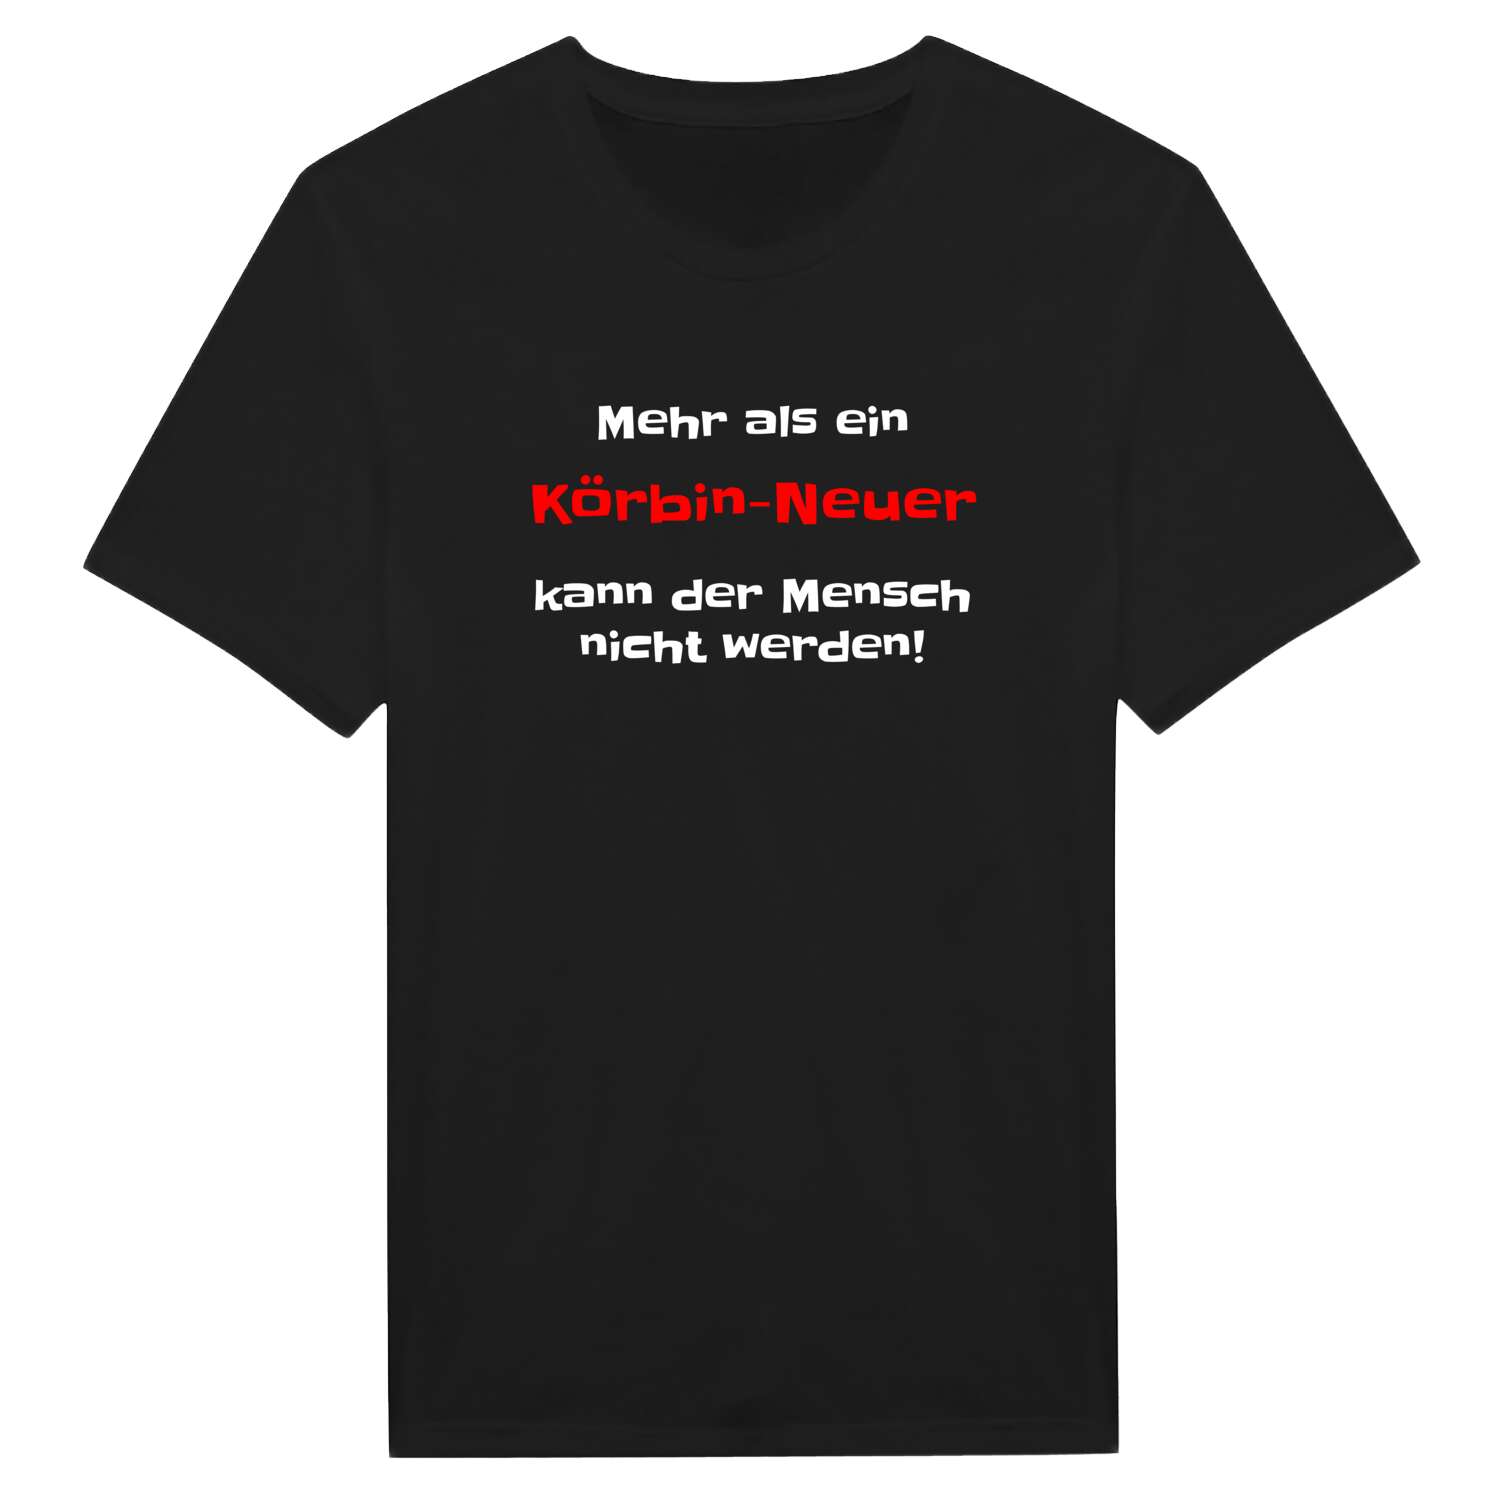 Körbin-Neu T-Shirt »Mehr als ein«